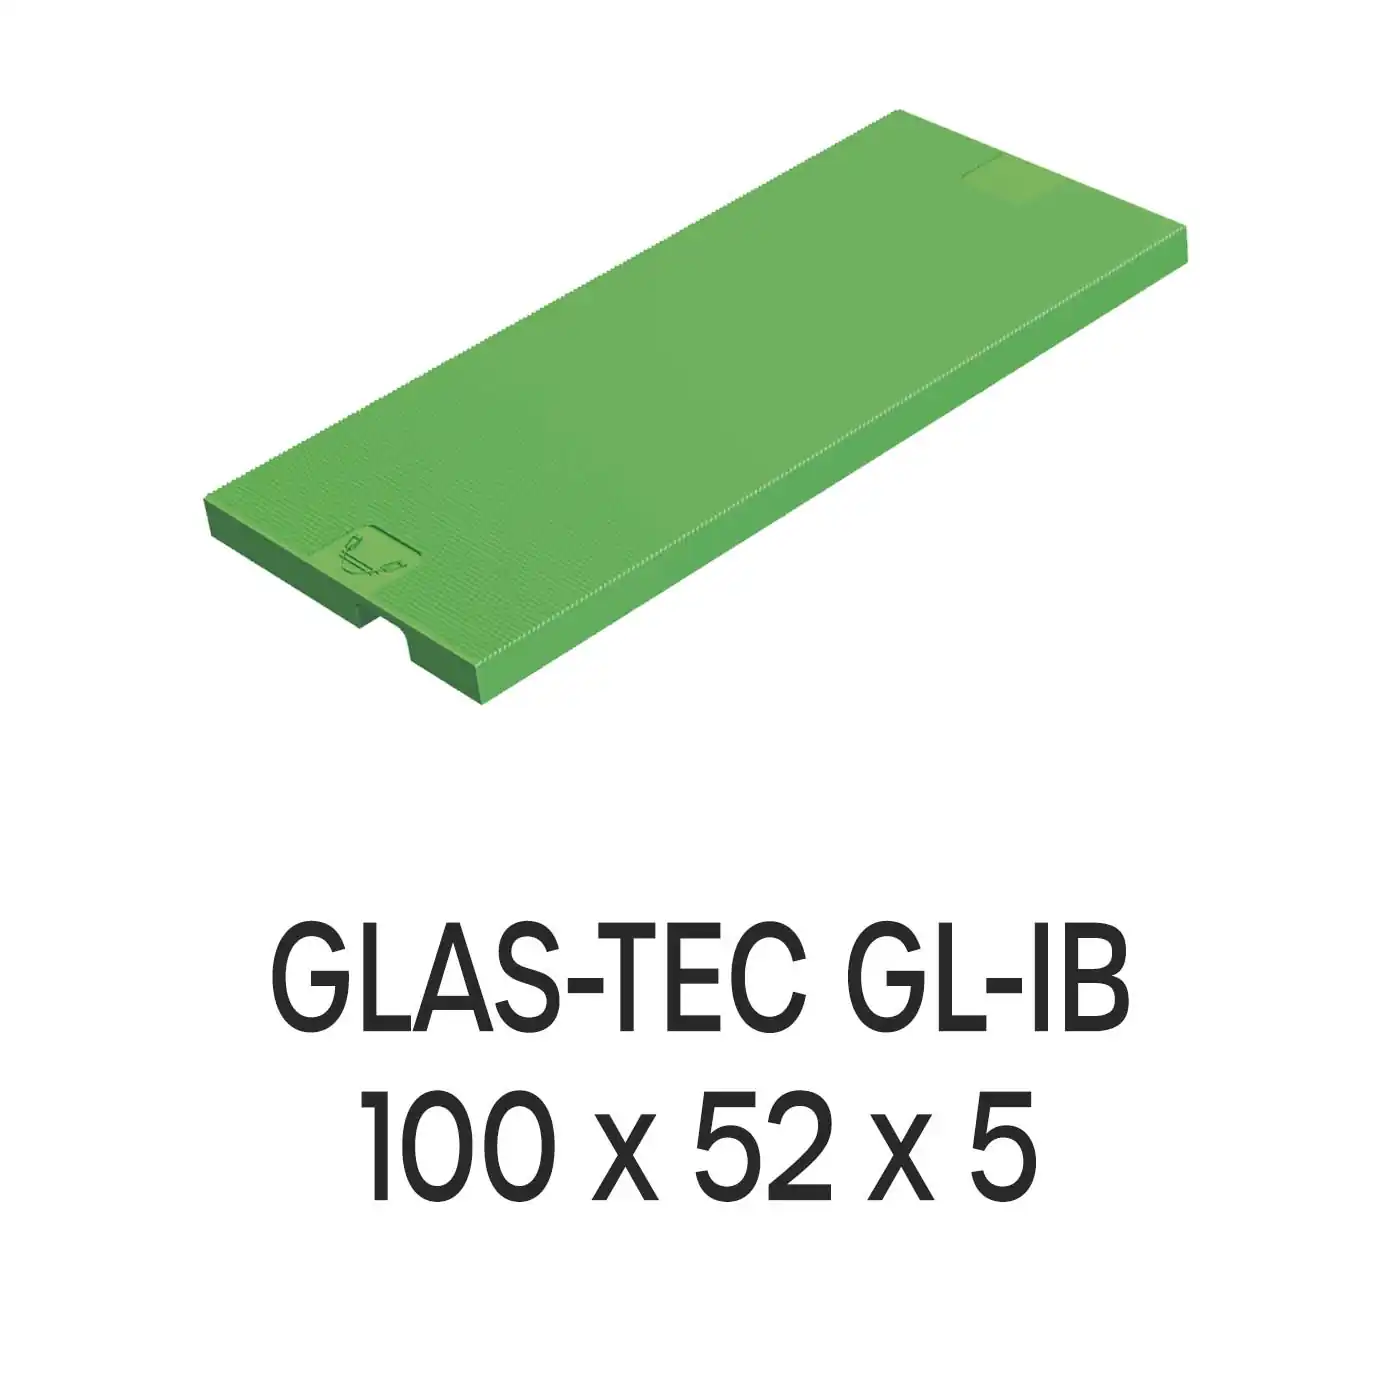 Roto Verglasungsklotz GLAS-TEC GL-IB, 100 x 52 x 5 mm, schwarz, 500 Stück